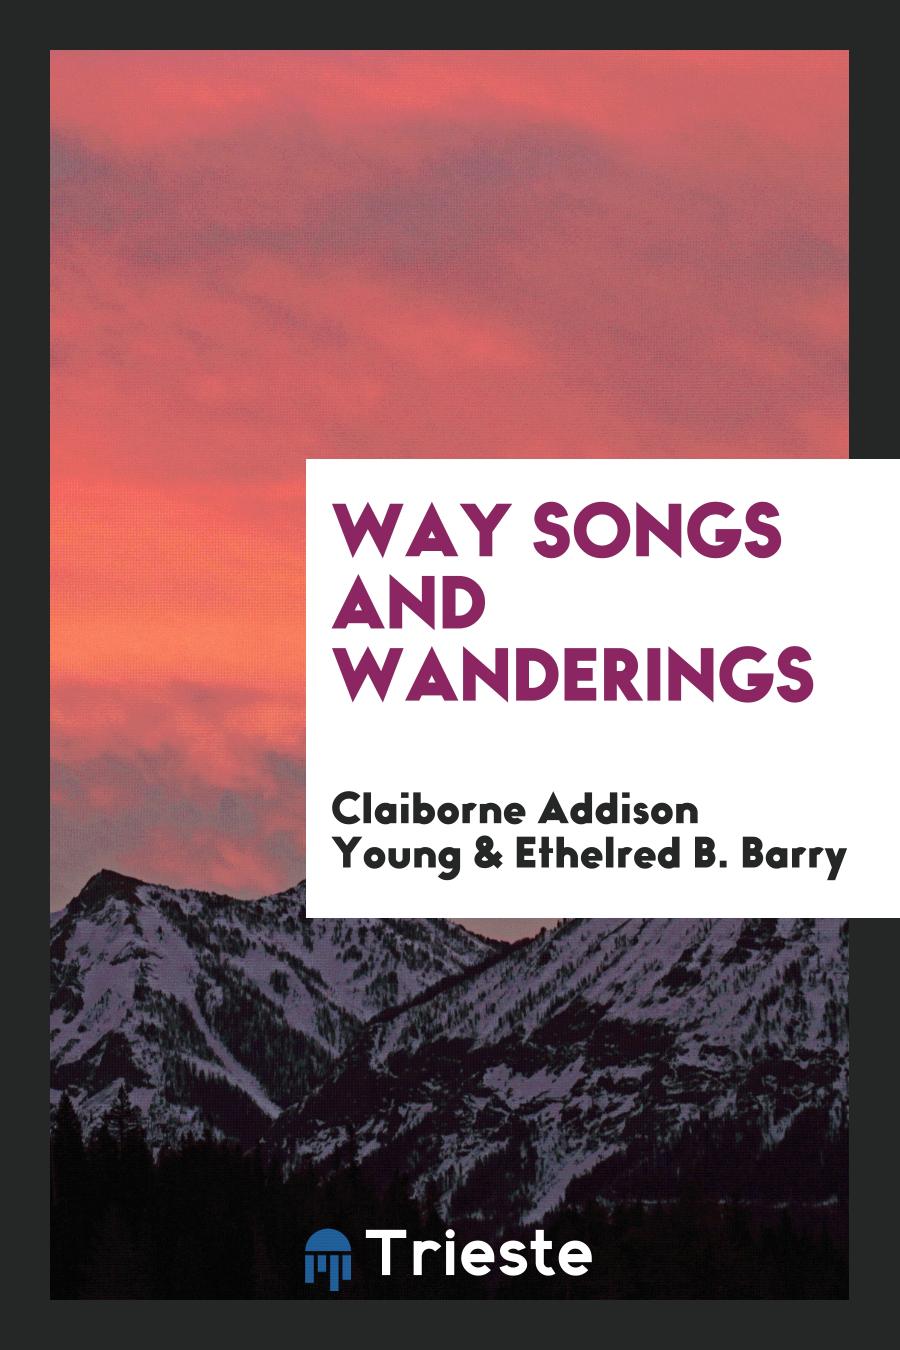 Way Songs and Wanderings